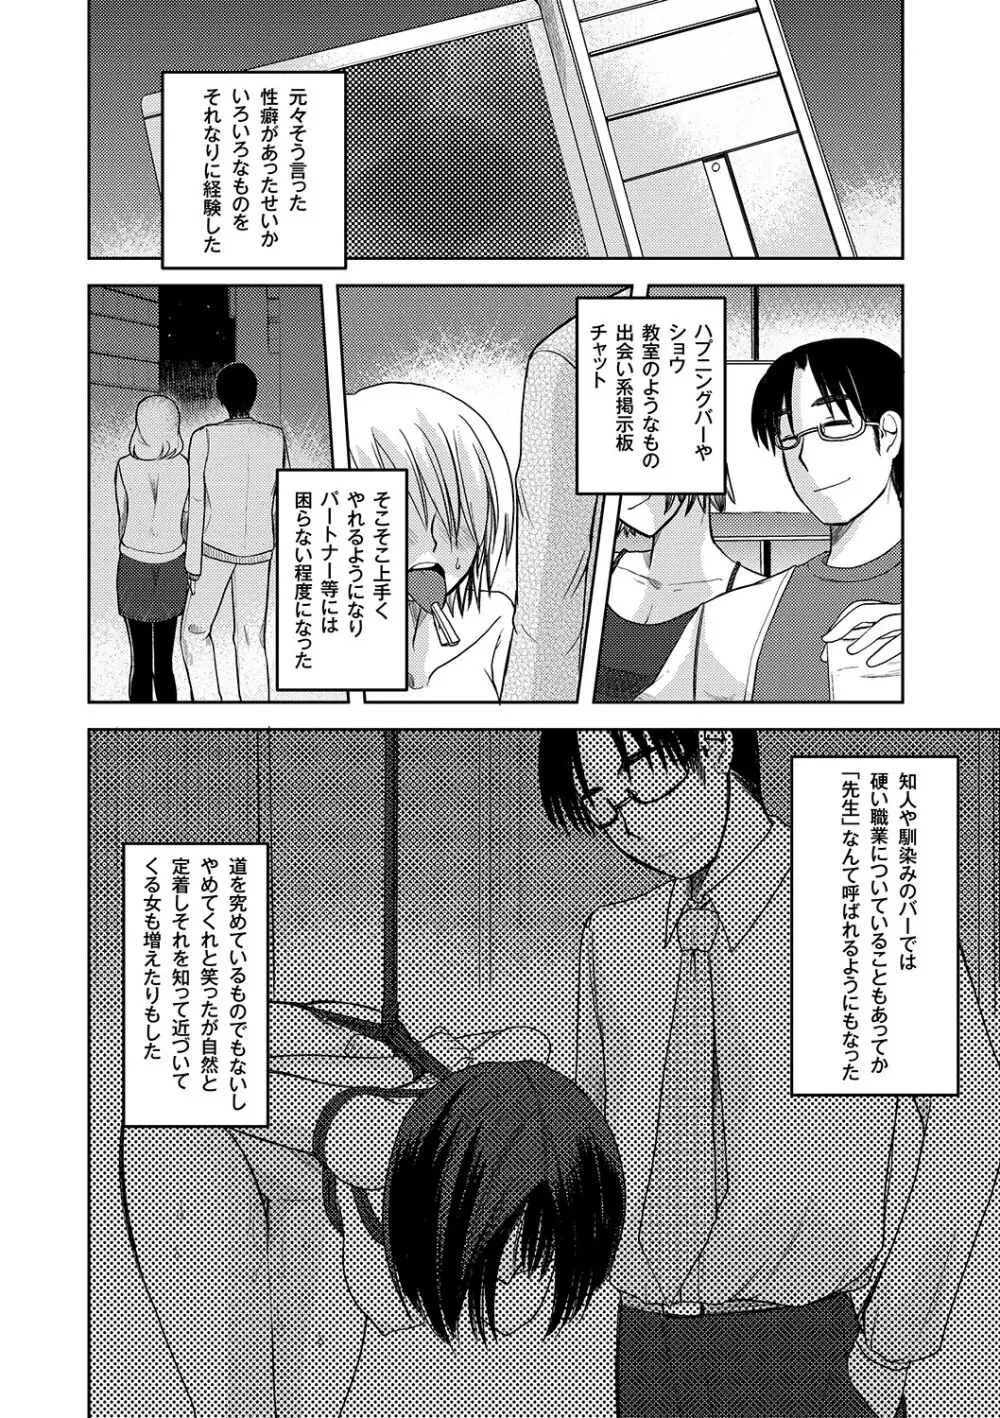 Zetsubo no kubiwa Ch.1-3 Page.2